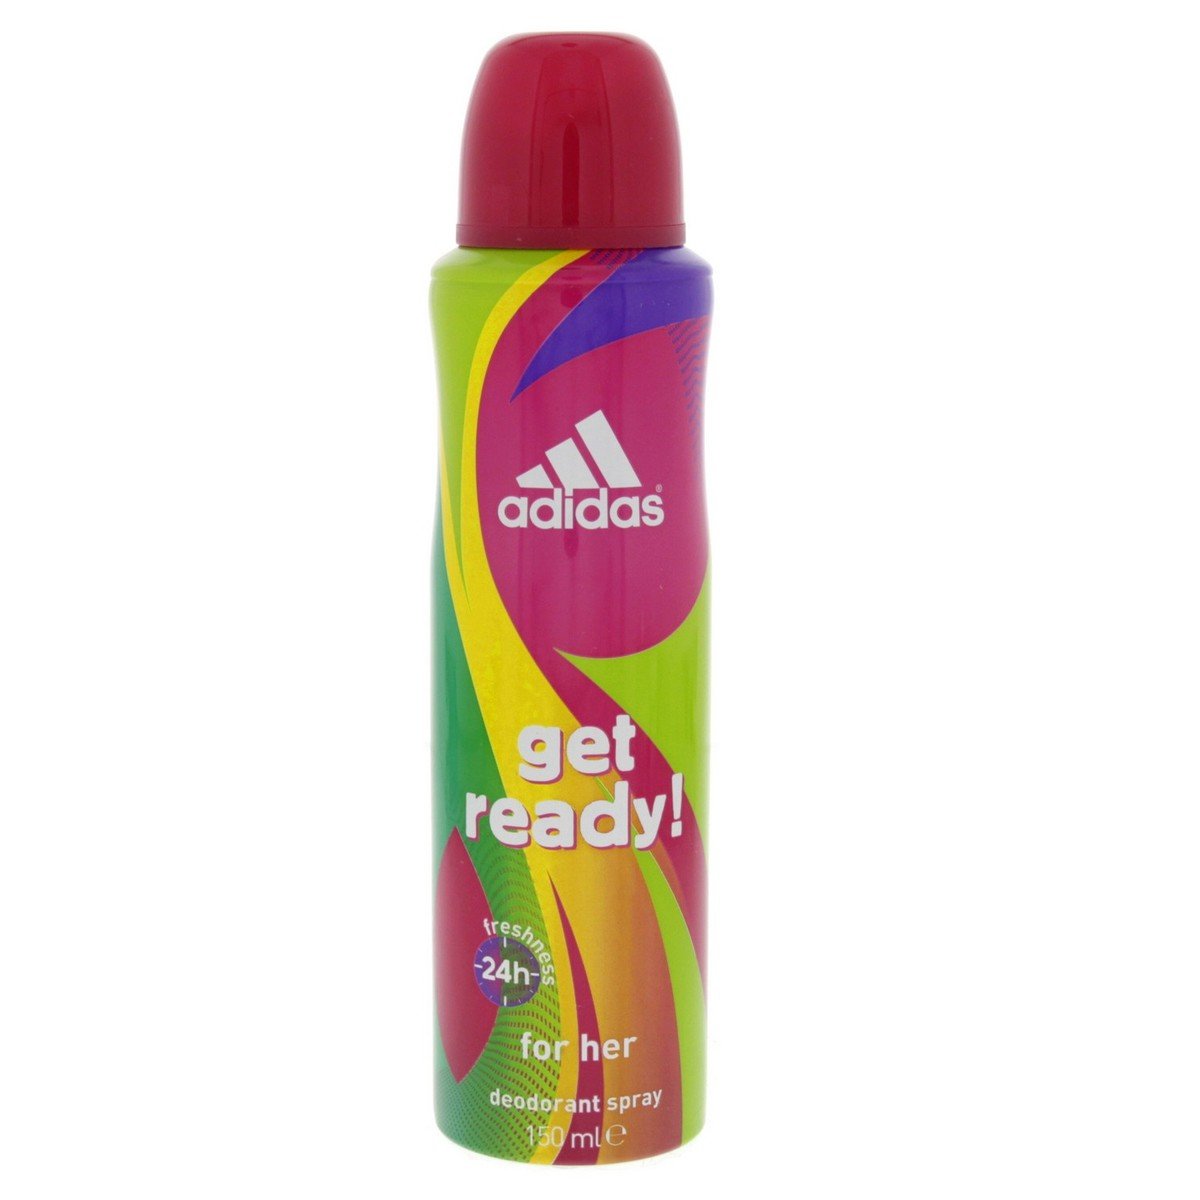 Adidas Get Ready Deodorant Spray For Women 150 ml